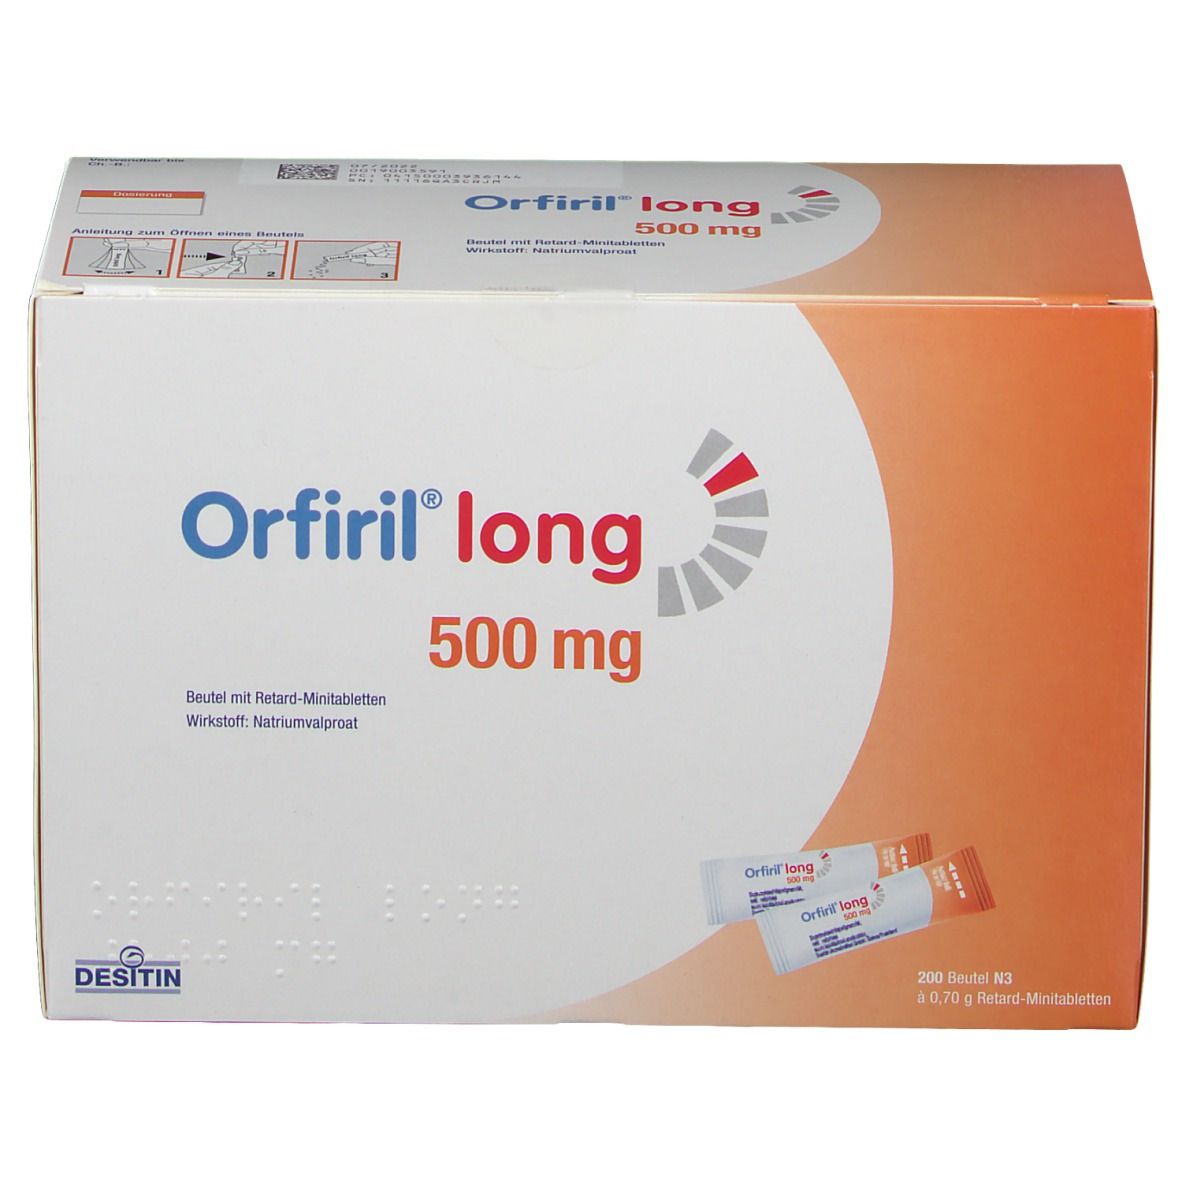 Orfiril® long 500 mg